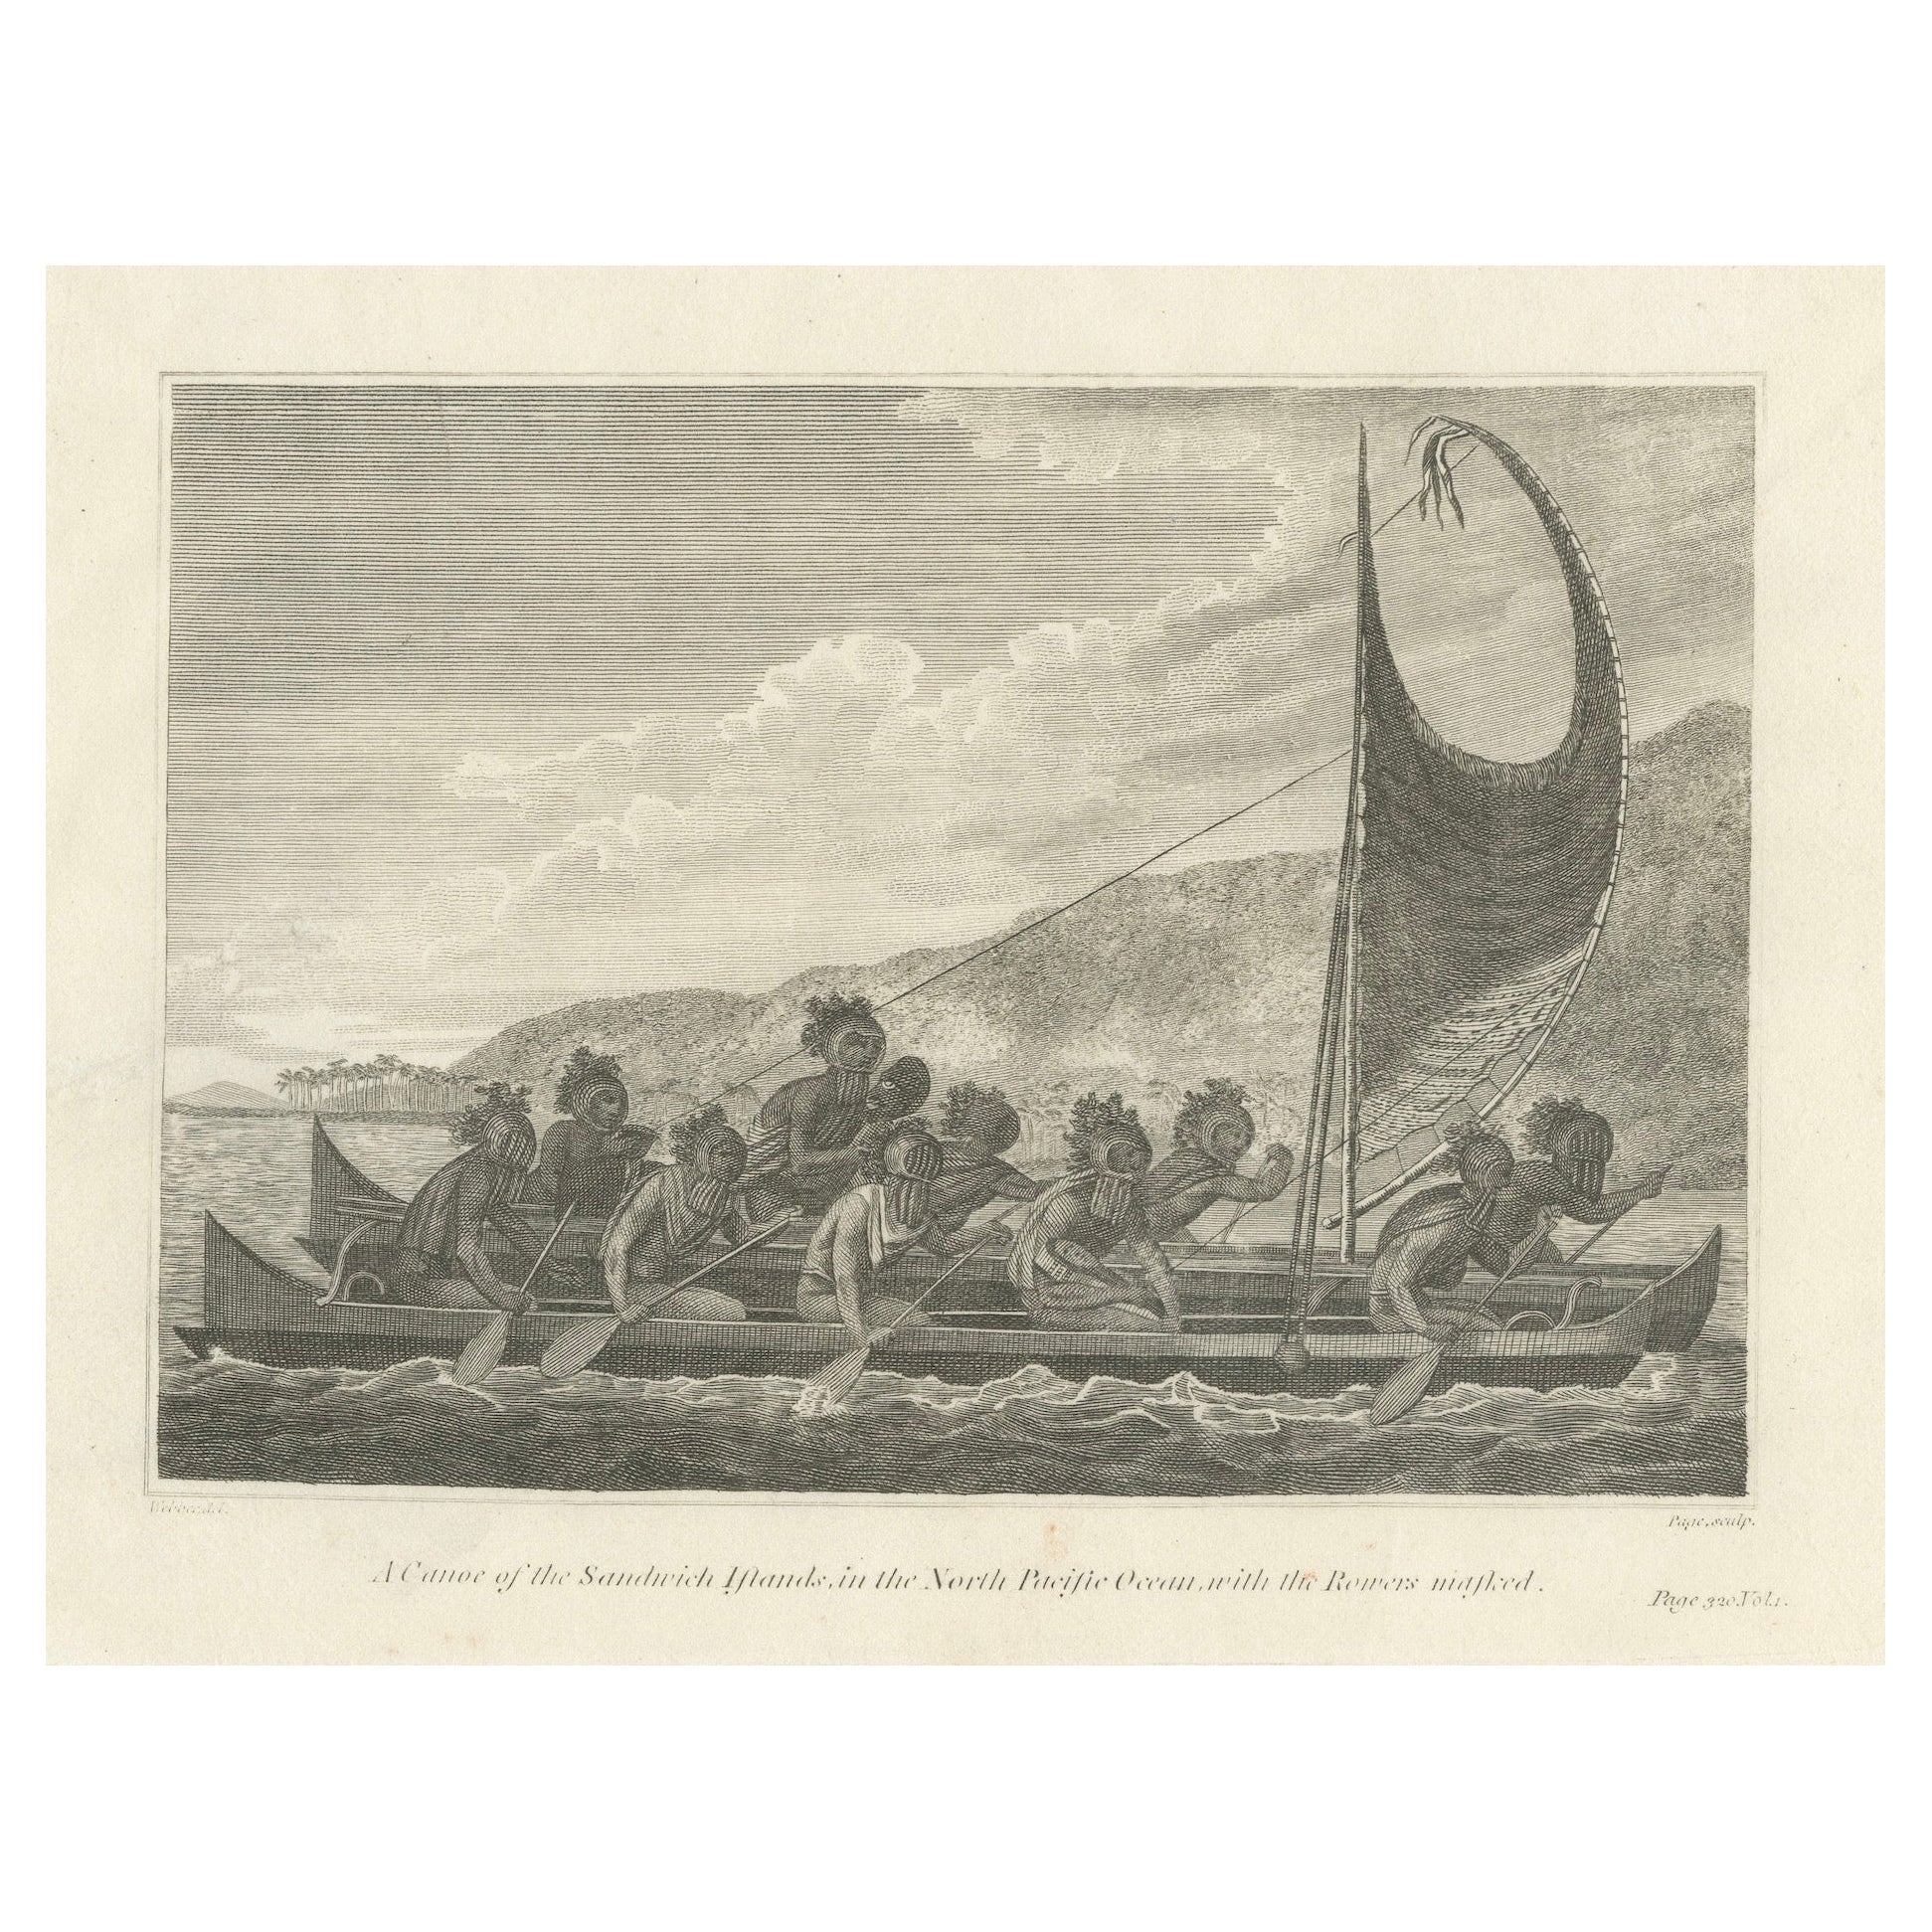 Die Reise zum Pazifik: Hawaiianisches Kriegskanu in Aktion, um 1790